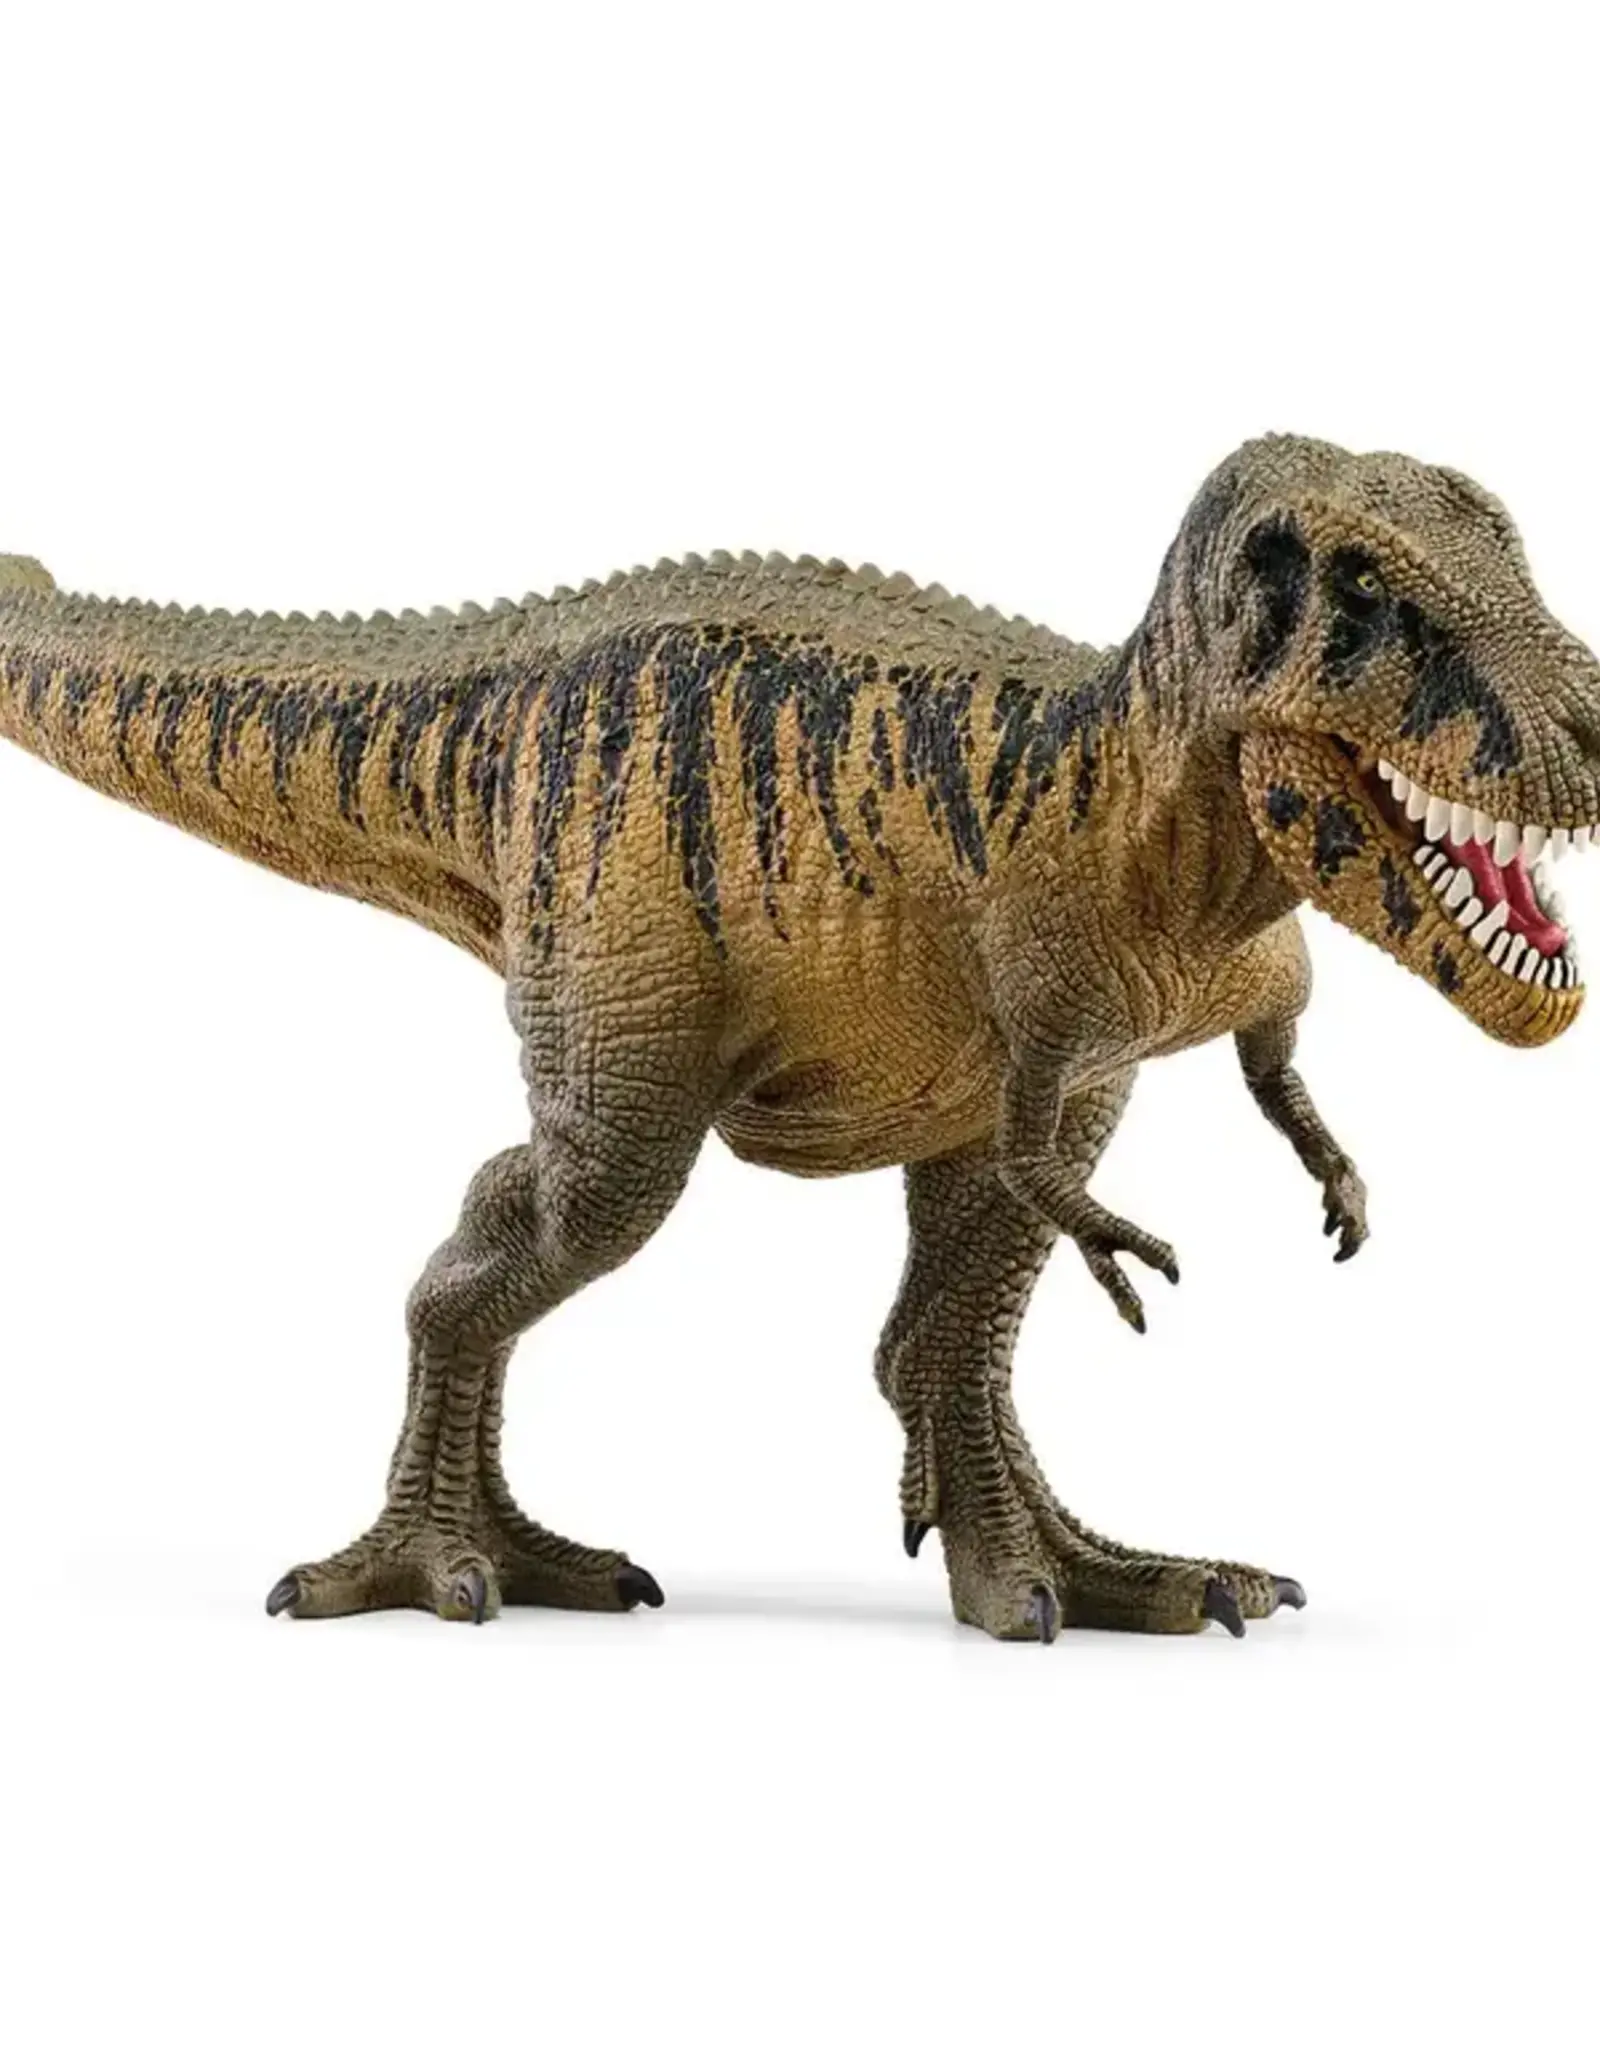 SCHLEICH Tarbosaurus